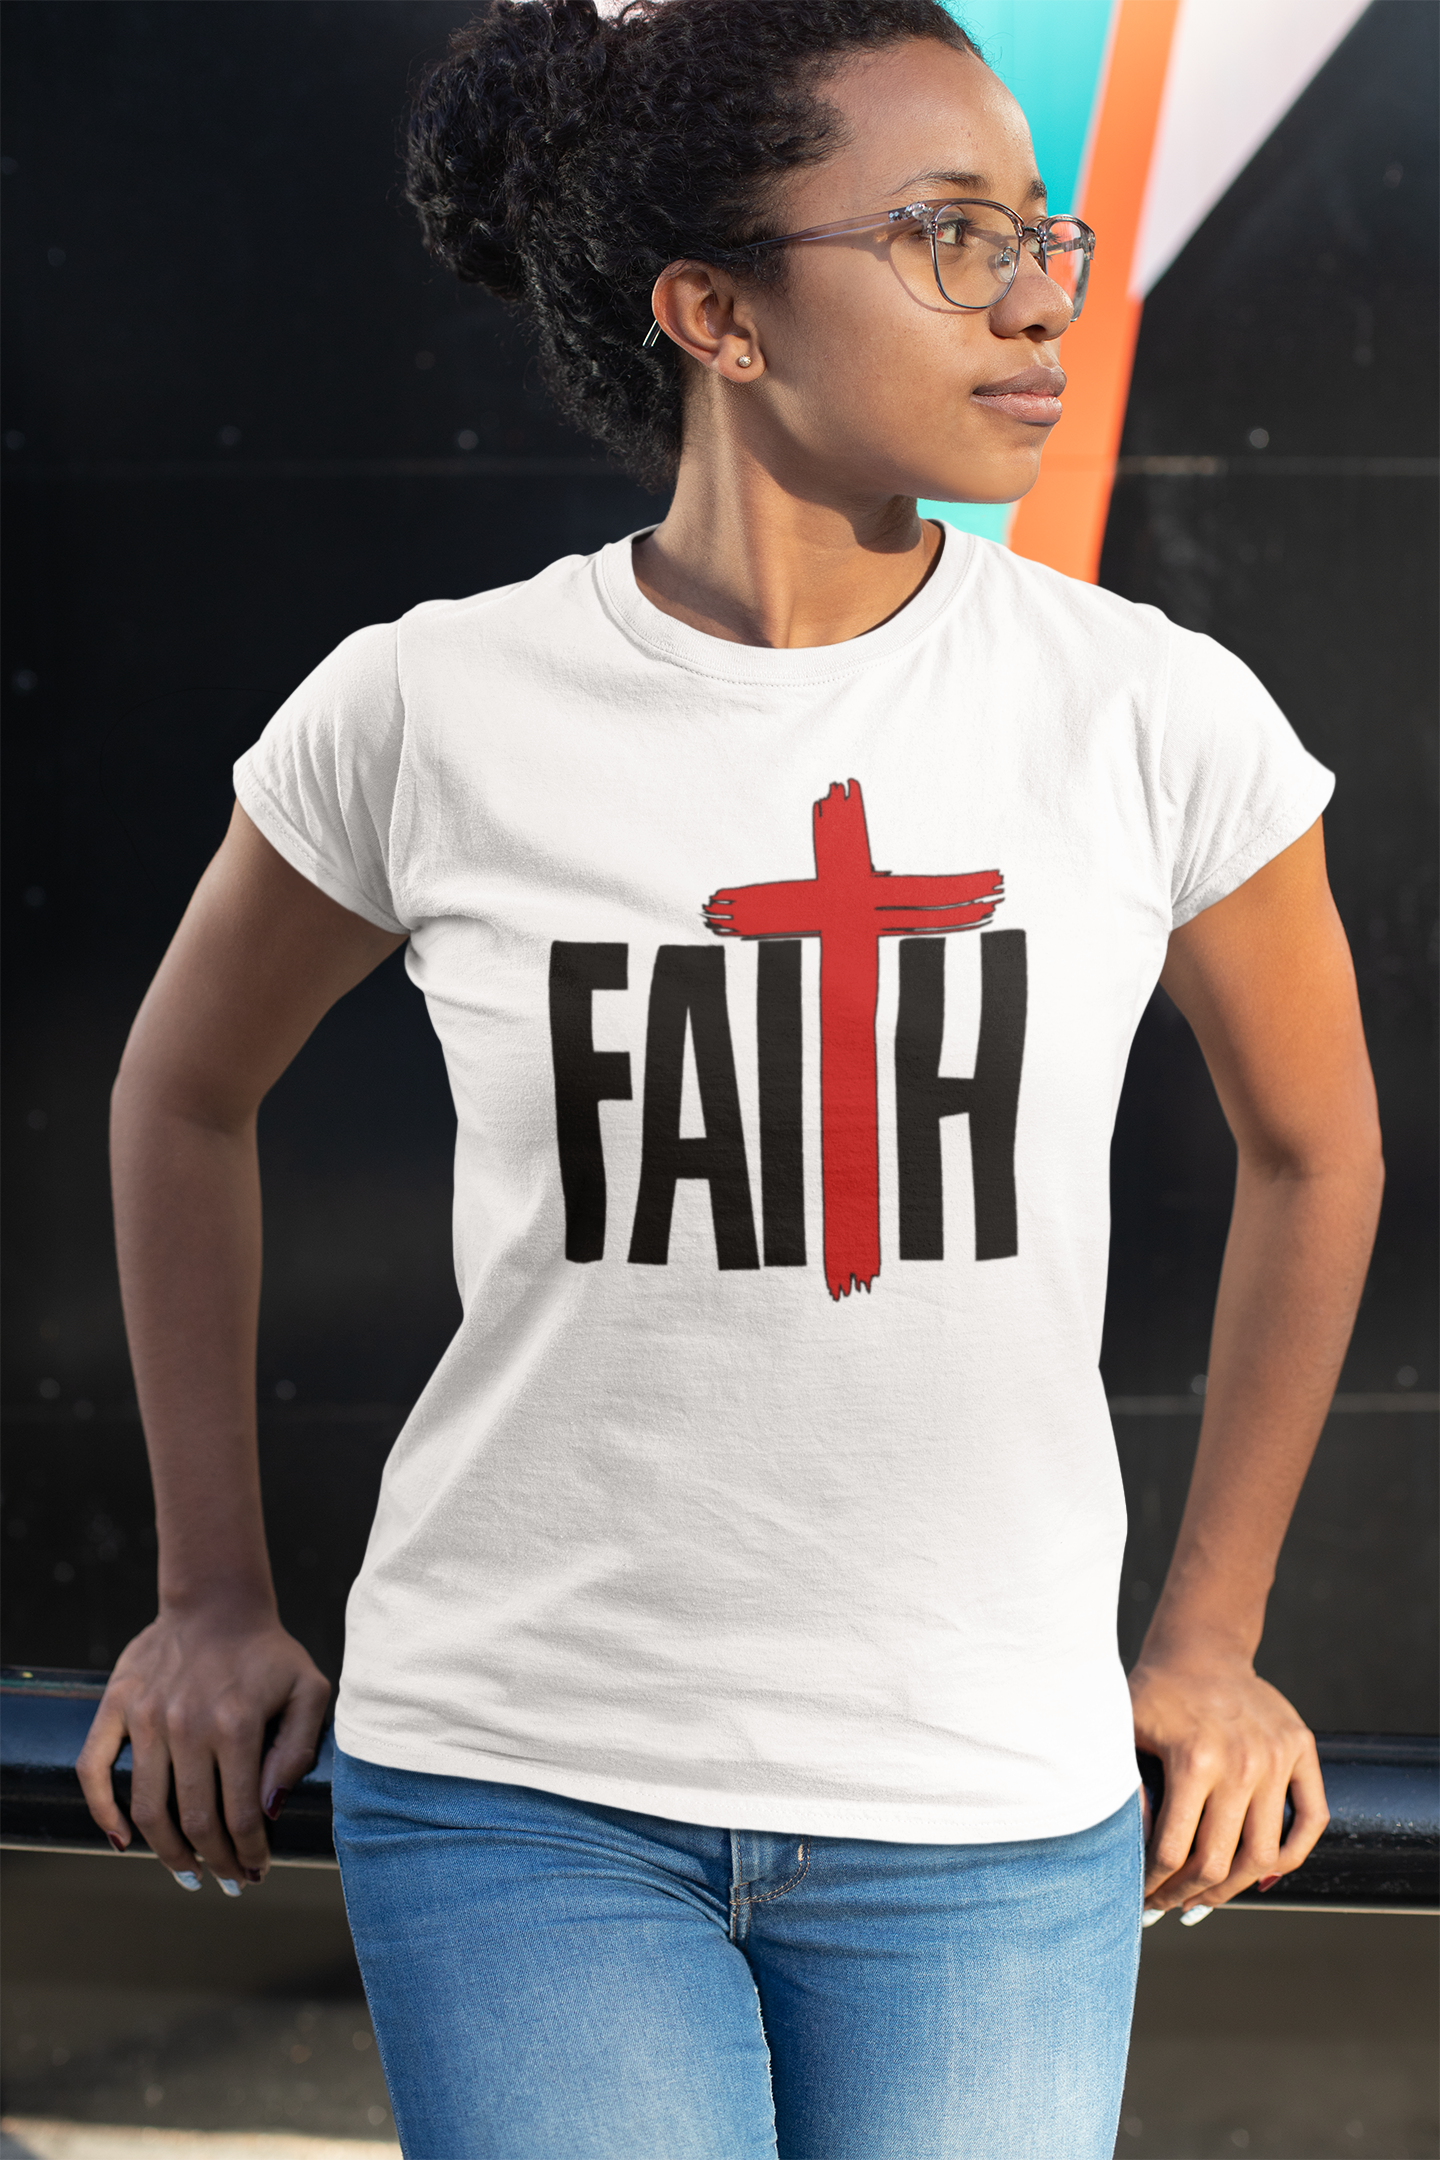 Big Faith T-shirt